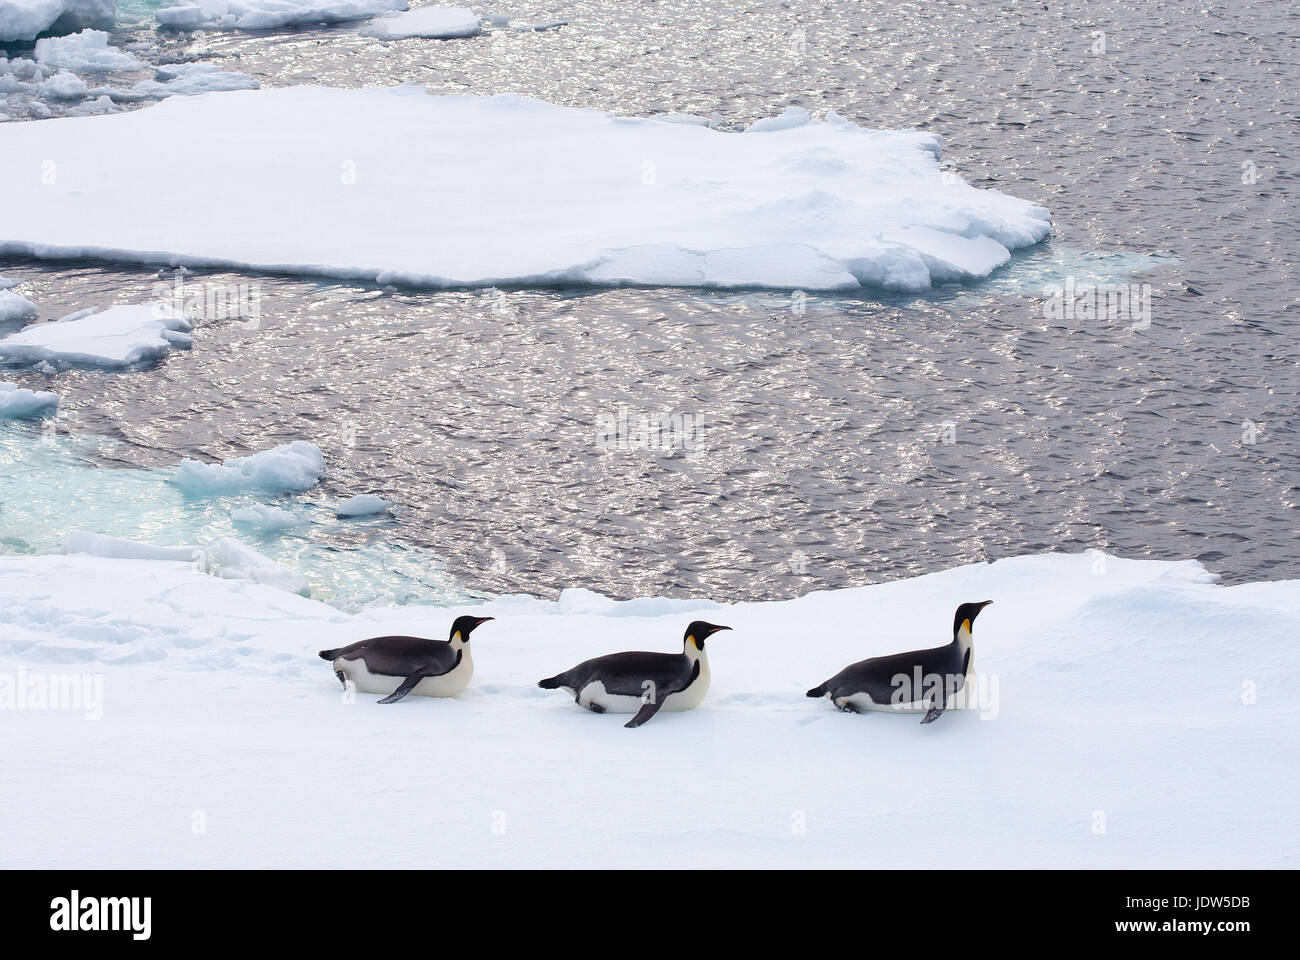 Pinguini imperatore su Iceberg, Ice floe nell'Oceano del Sud, 180 miglia a nord di East Antarctica, Antartide Foto Stock